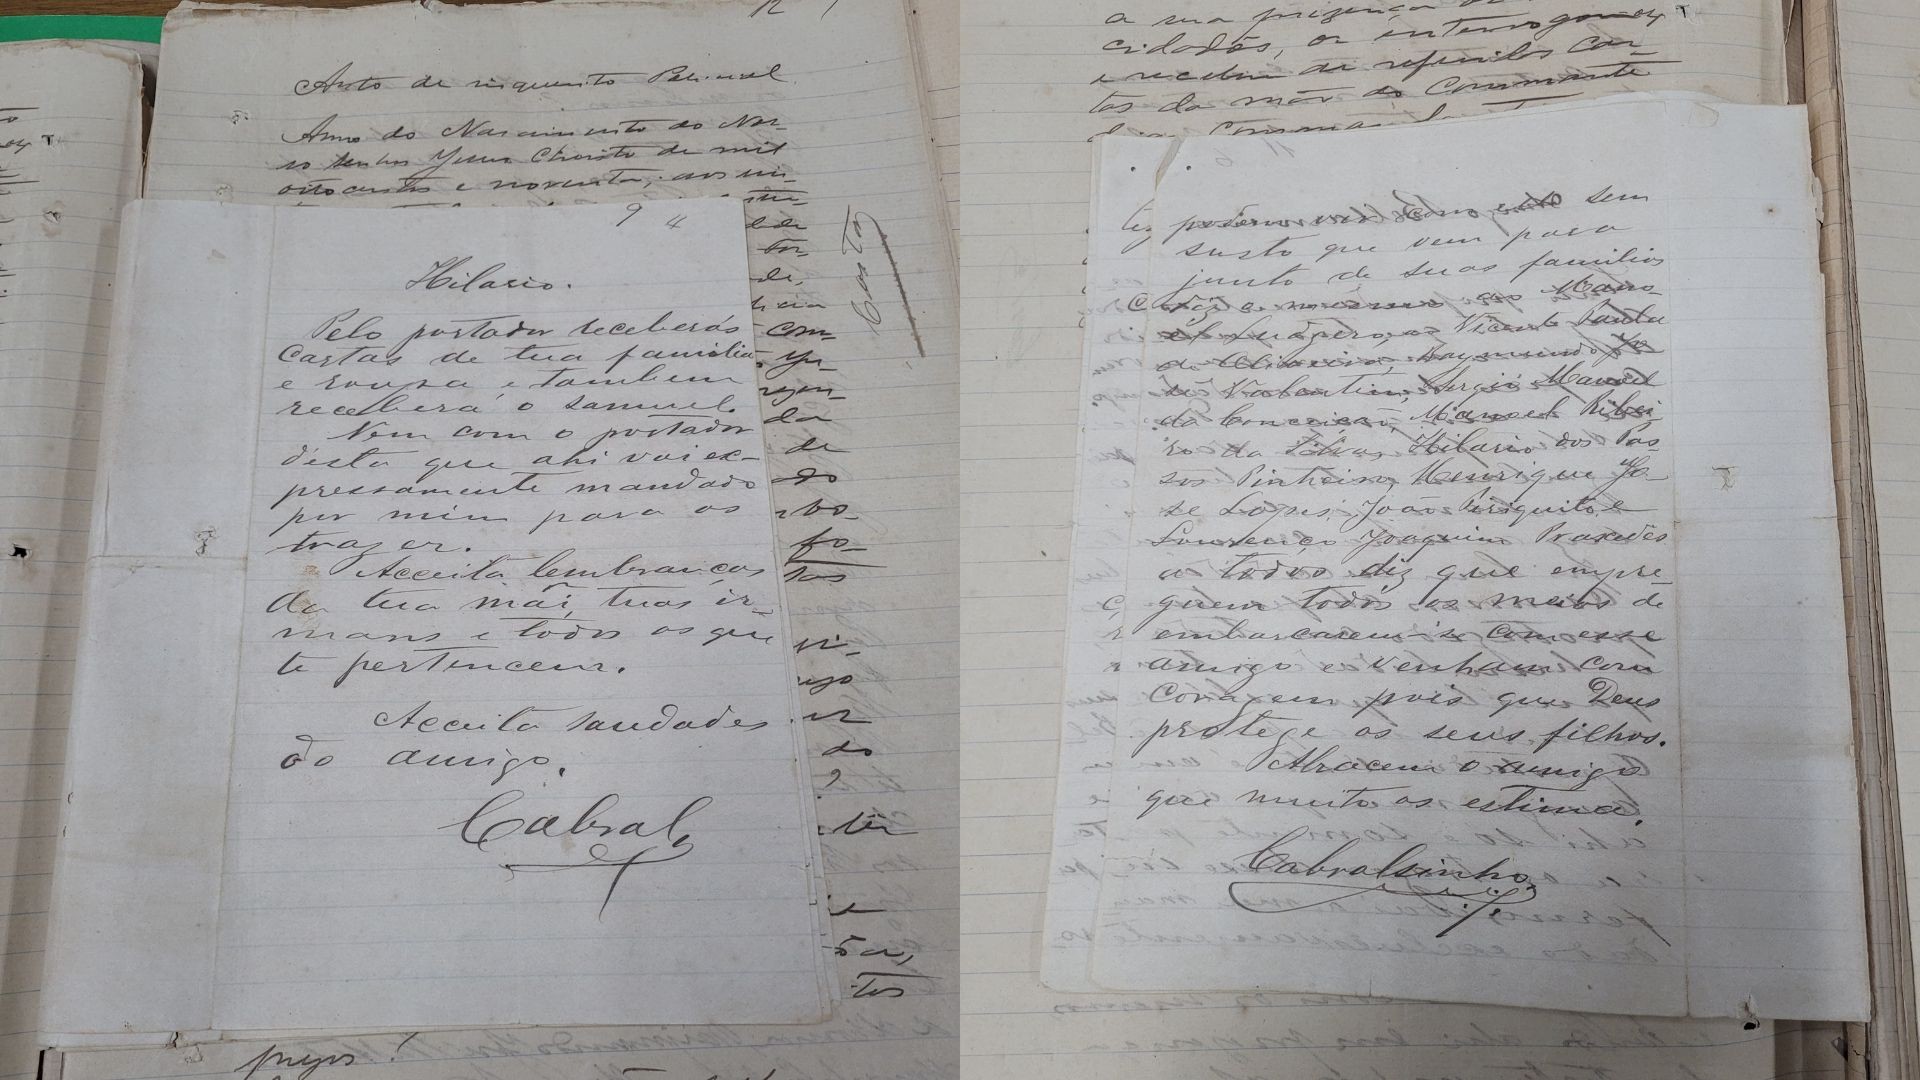 Pesquisadores do Amapá encontram carta do fim do século 19 atribuída a Cabralzinho